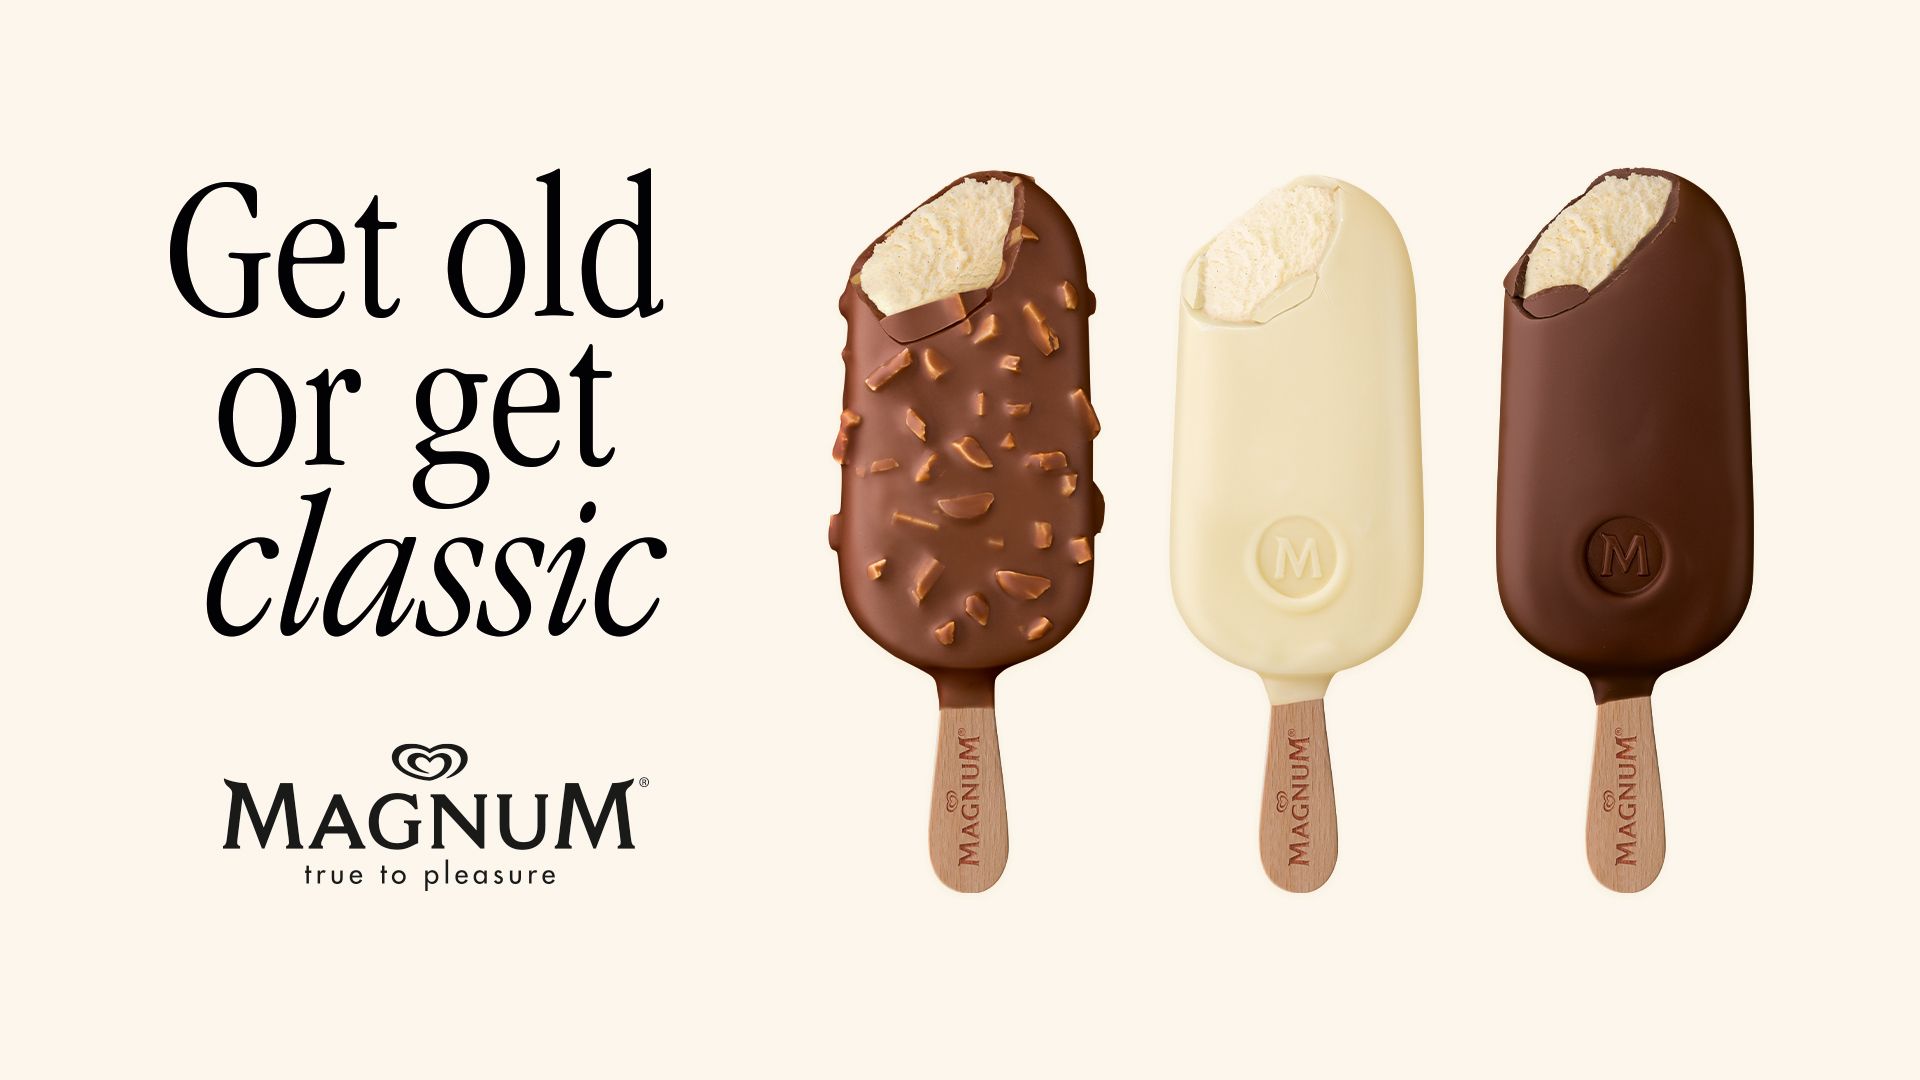 Three magnum ice creams + “get old or get classic” + “magnum true to pleasure”